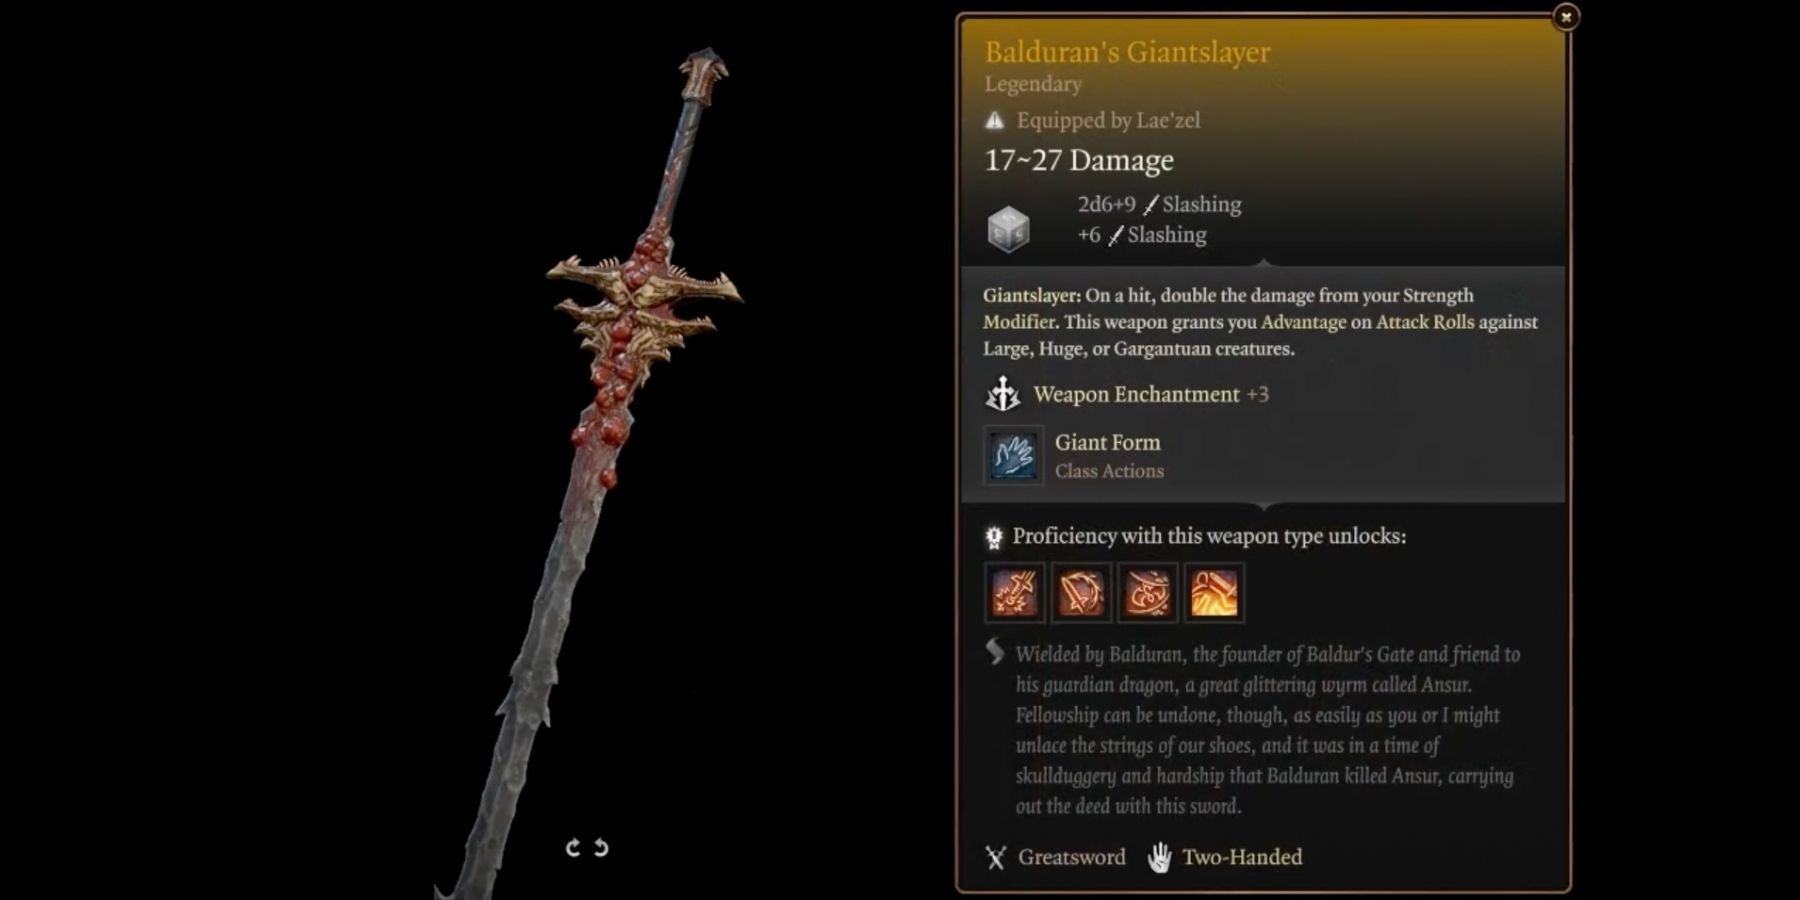 Balduran's Giantslayer in BG3